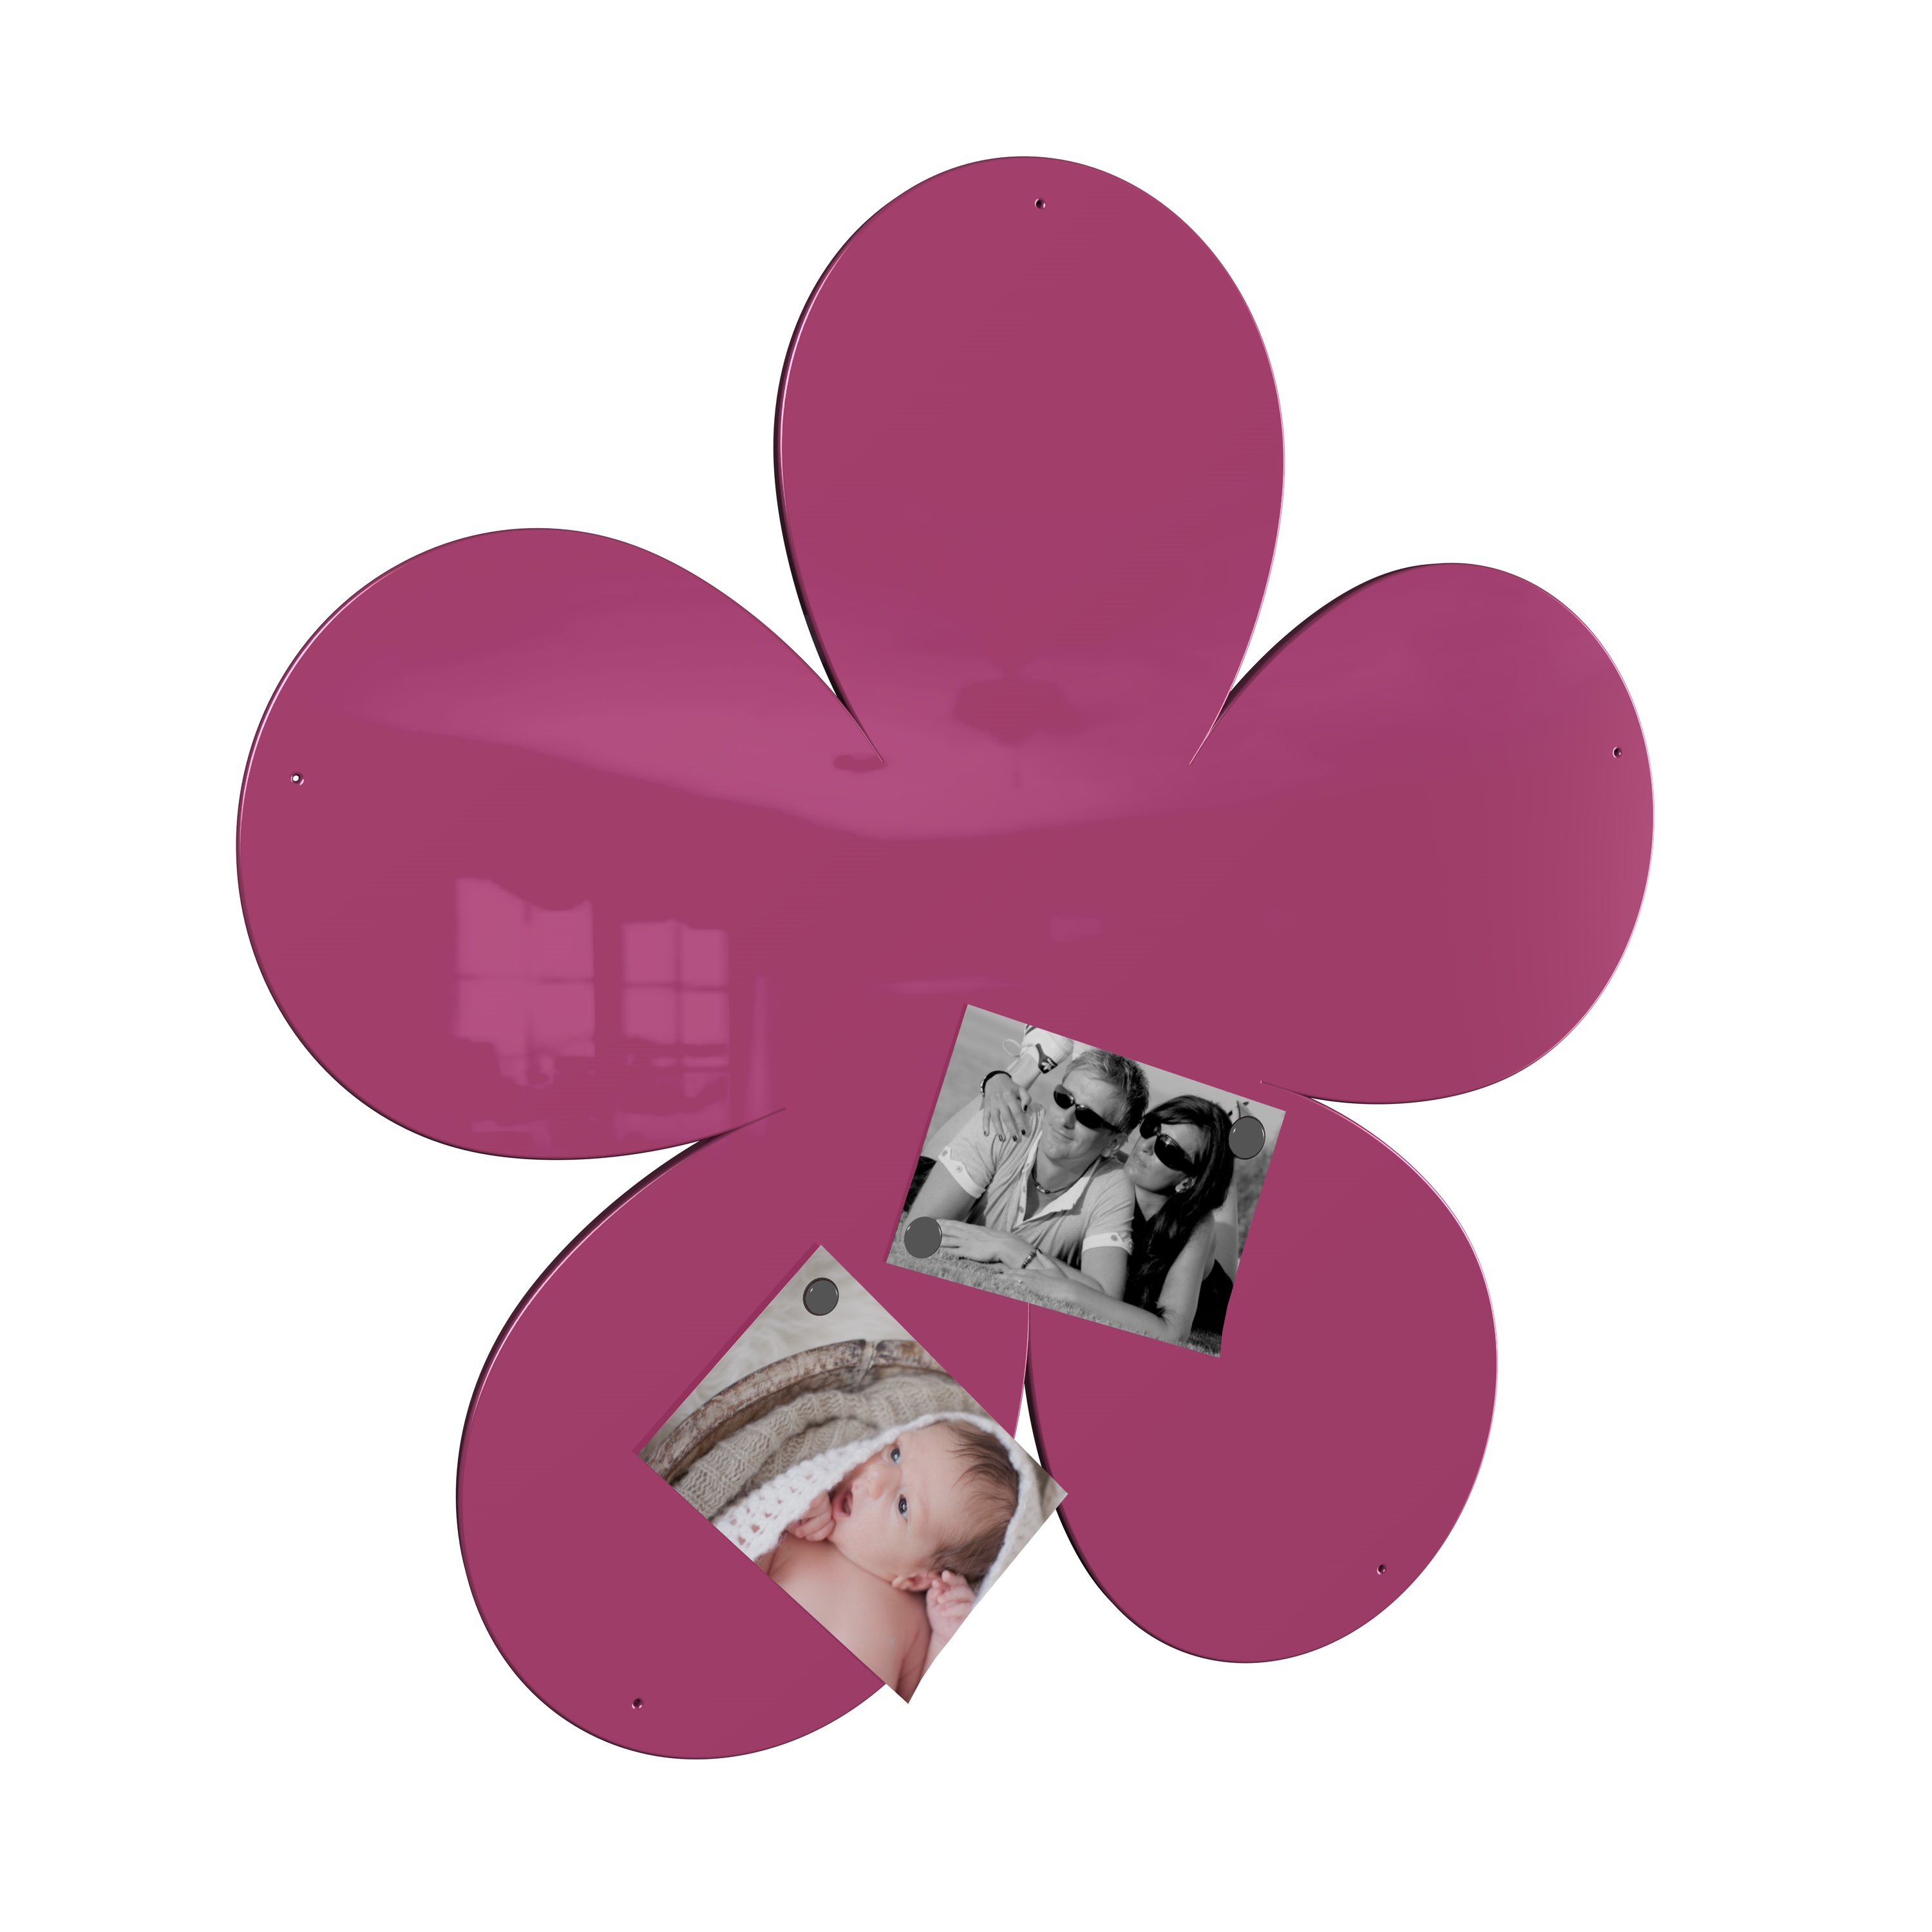 Magnetwand Magnettafel Memoboard - Blume - RAL 4010 telemagenta pink rosa